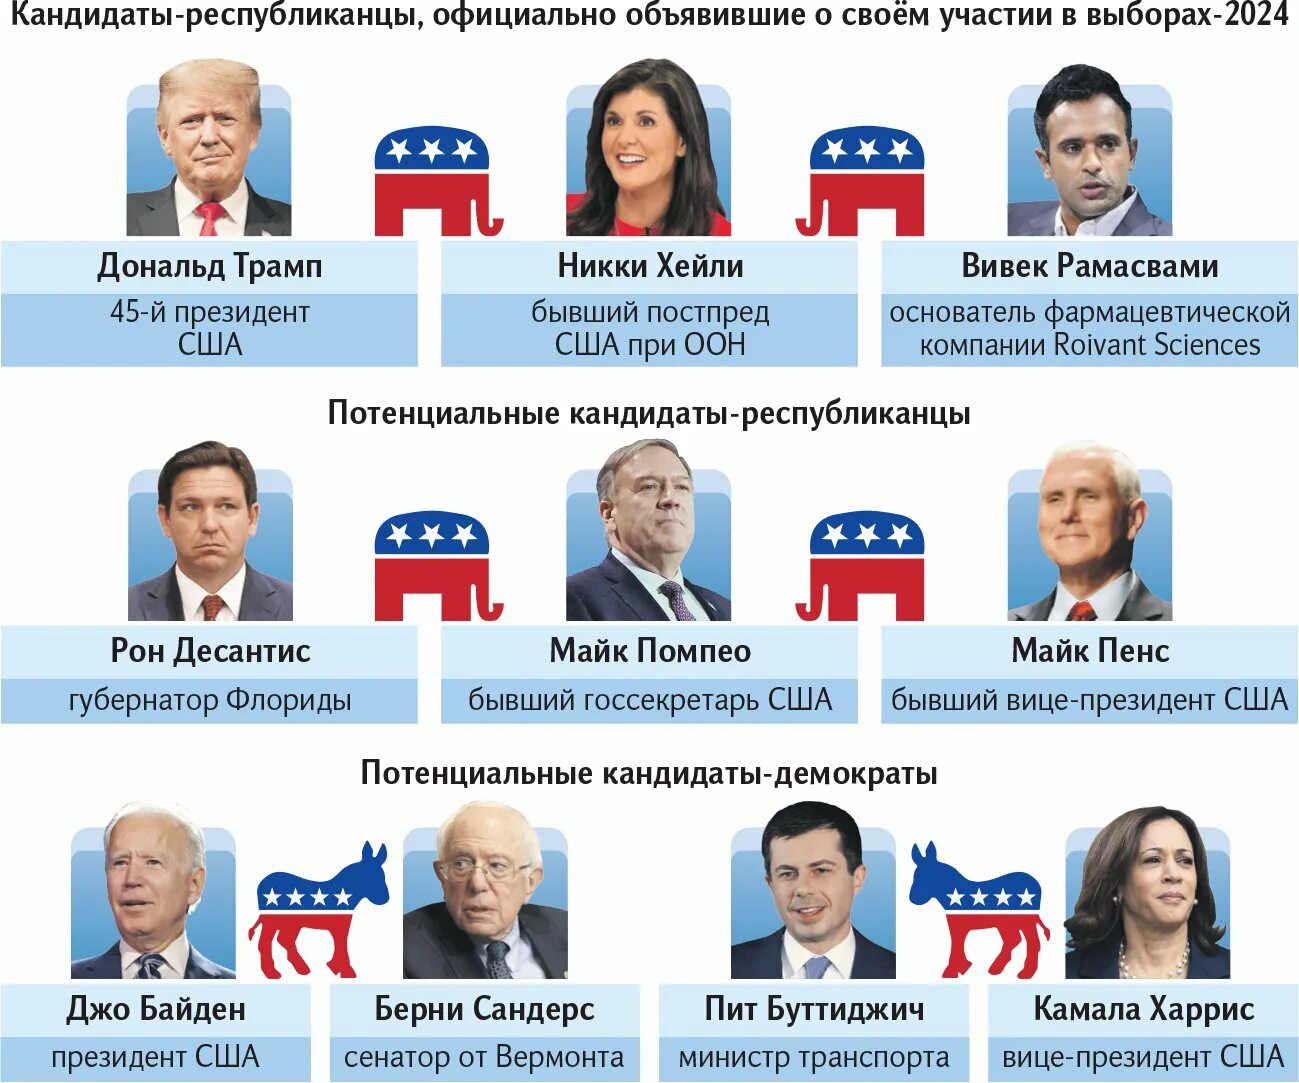 Ответы на викторину голосования 2024. Кандидаты на пост президента России в 2024 году. Вибори президента России 2024.